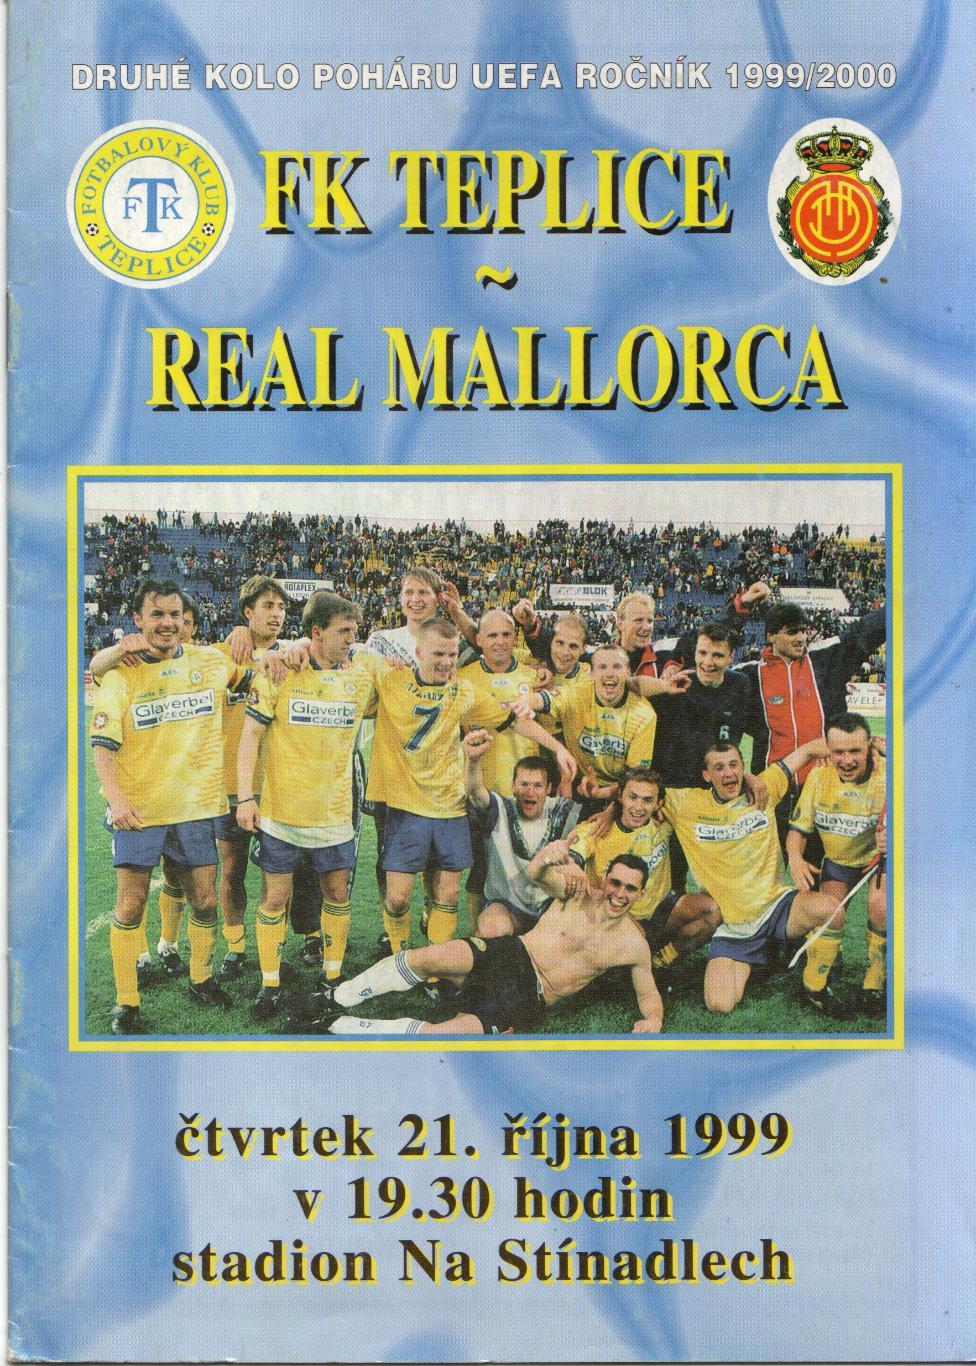 Теплице Чехия - Мальорка Испания 21.10.1999